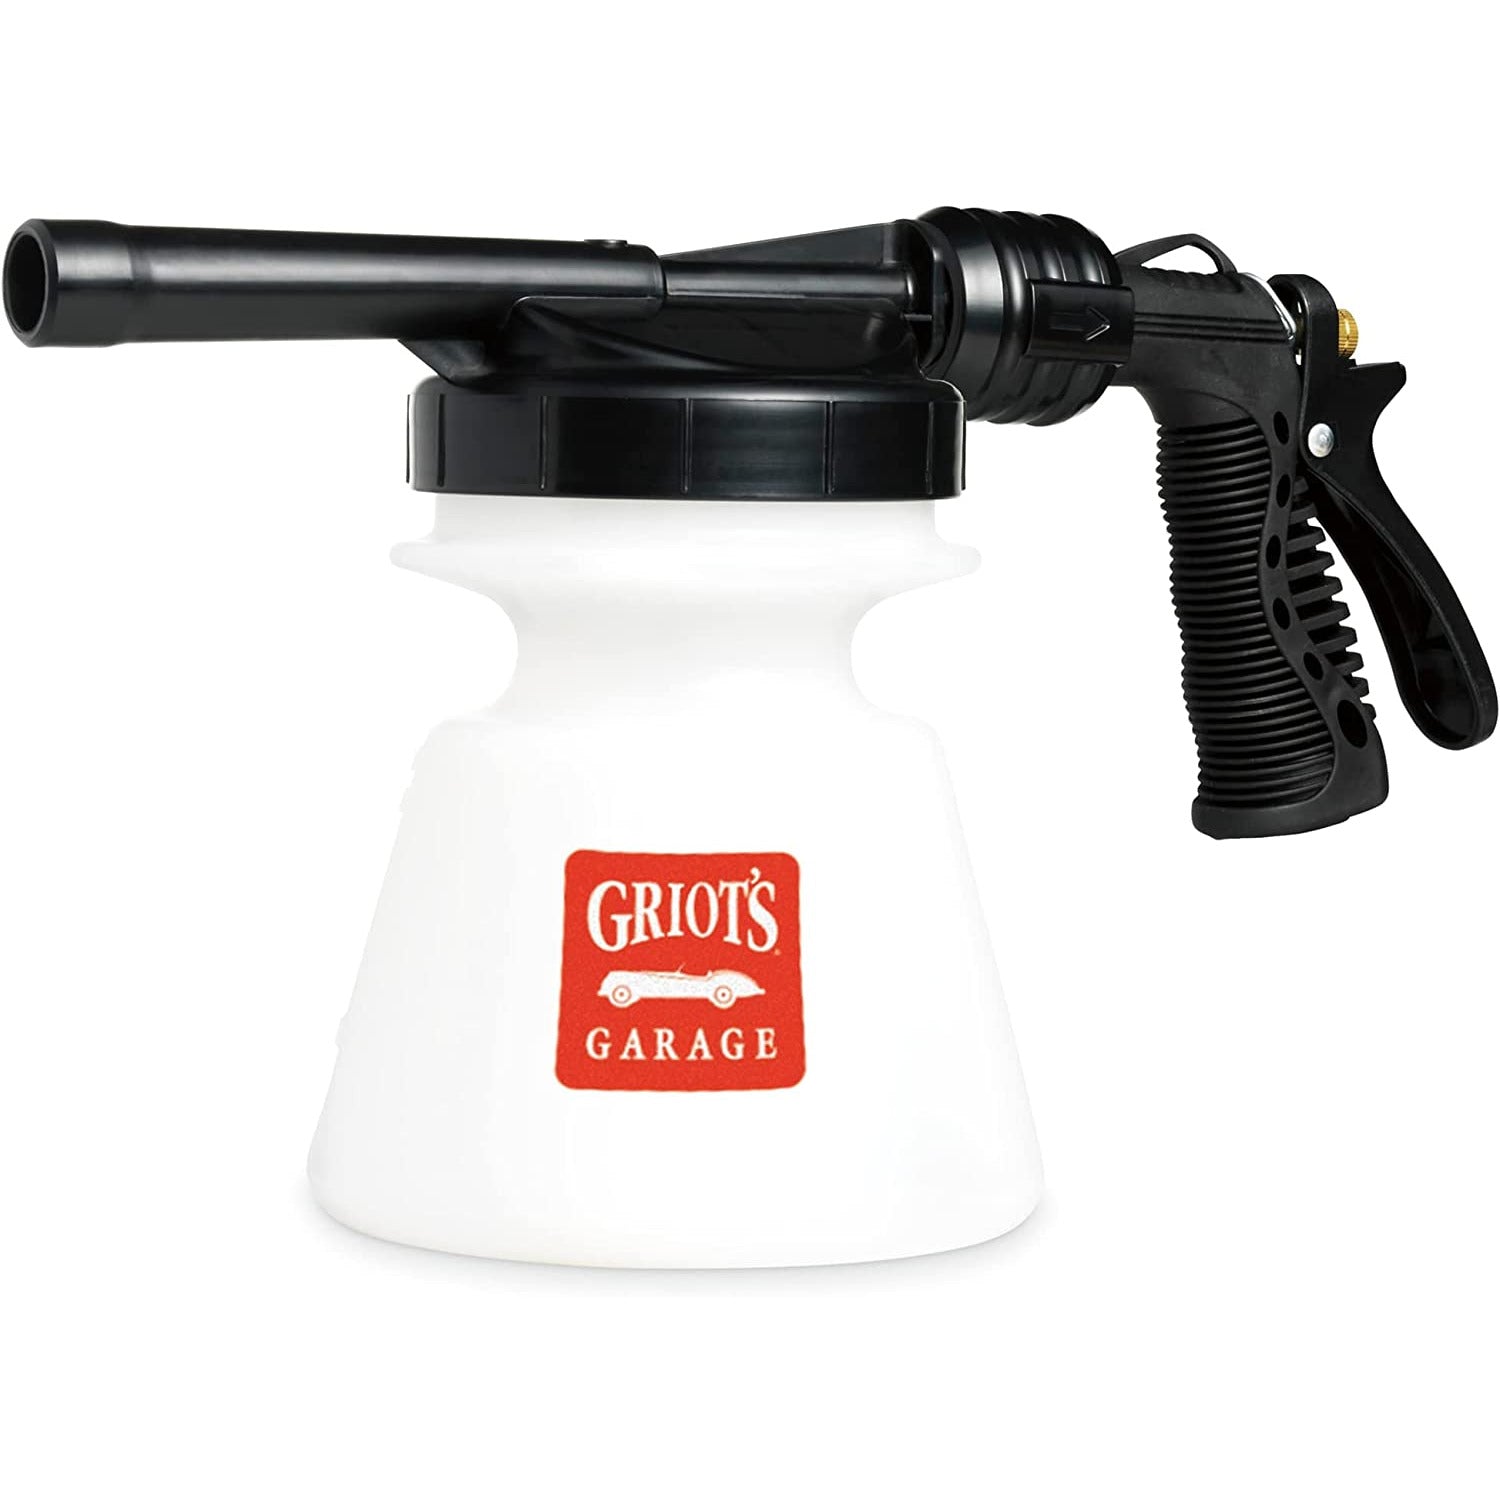 GRT 51140 Griot's Garage Brilliant Finish Foaming Gun Sprayer